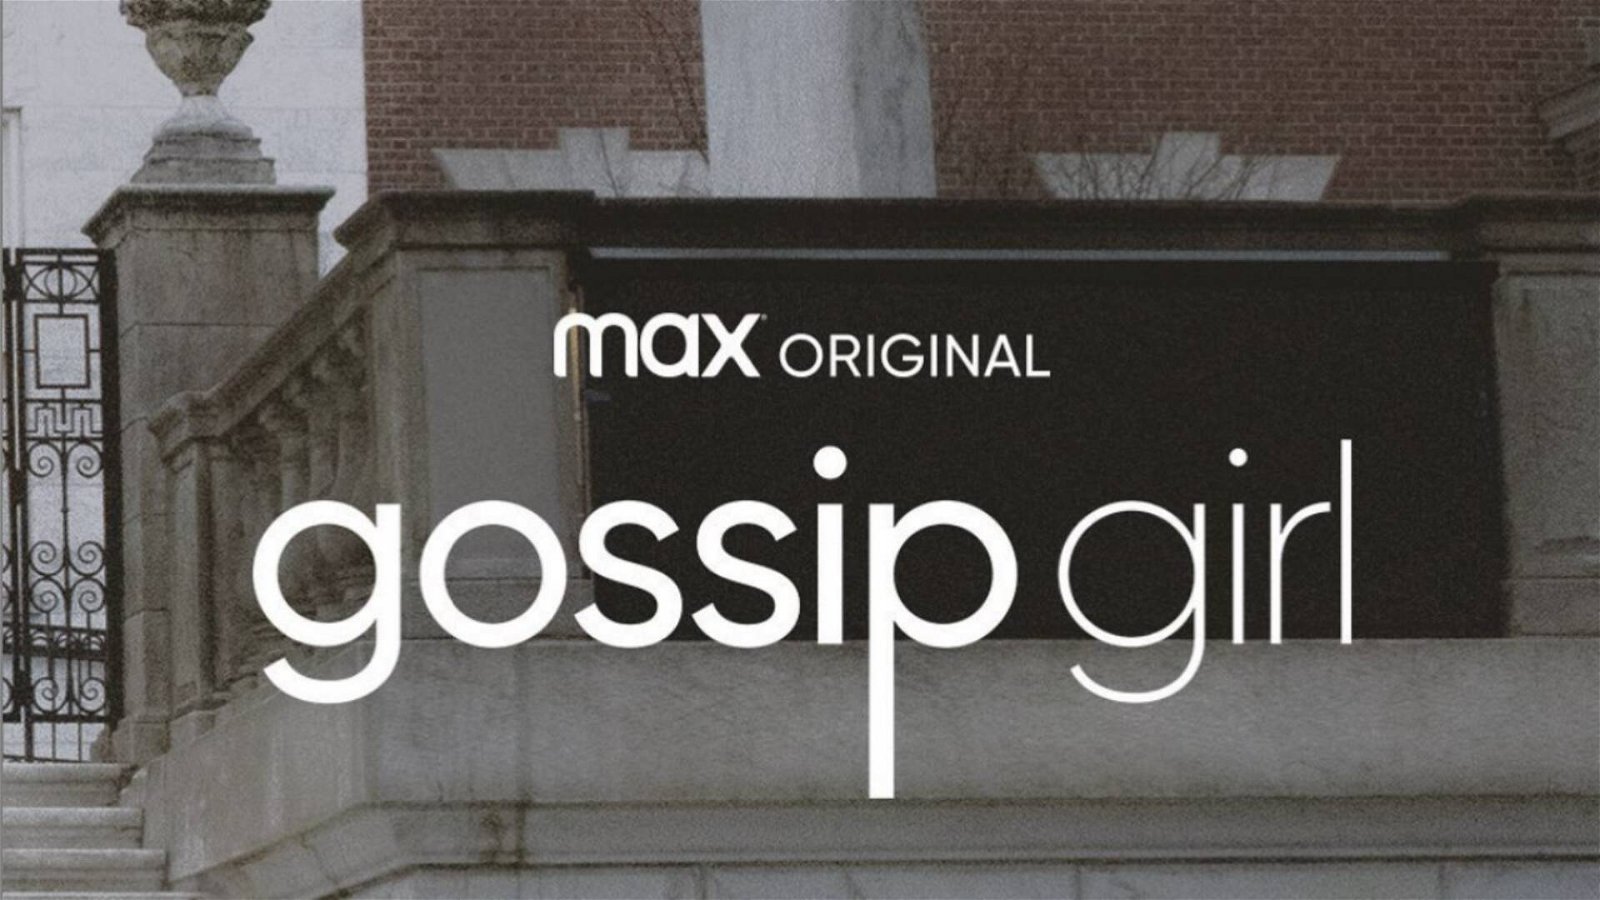 Immagine di Gossip Girl, anteprima del reboot per HBO Max